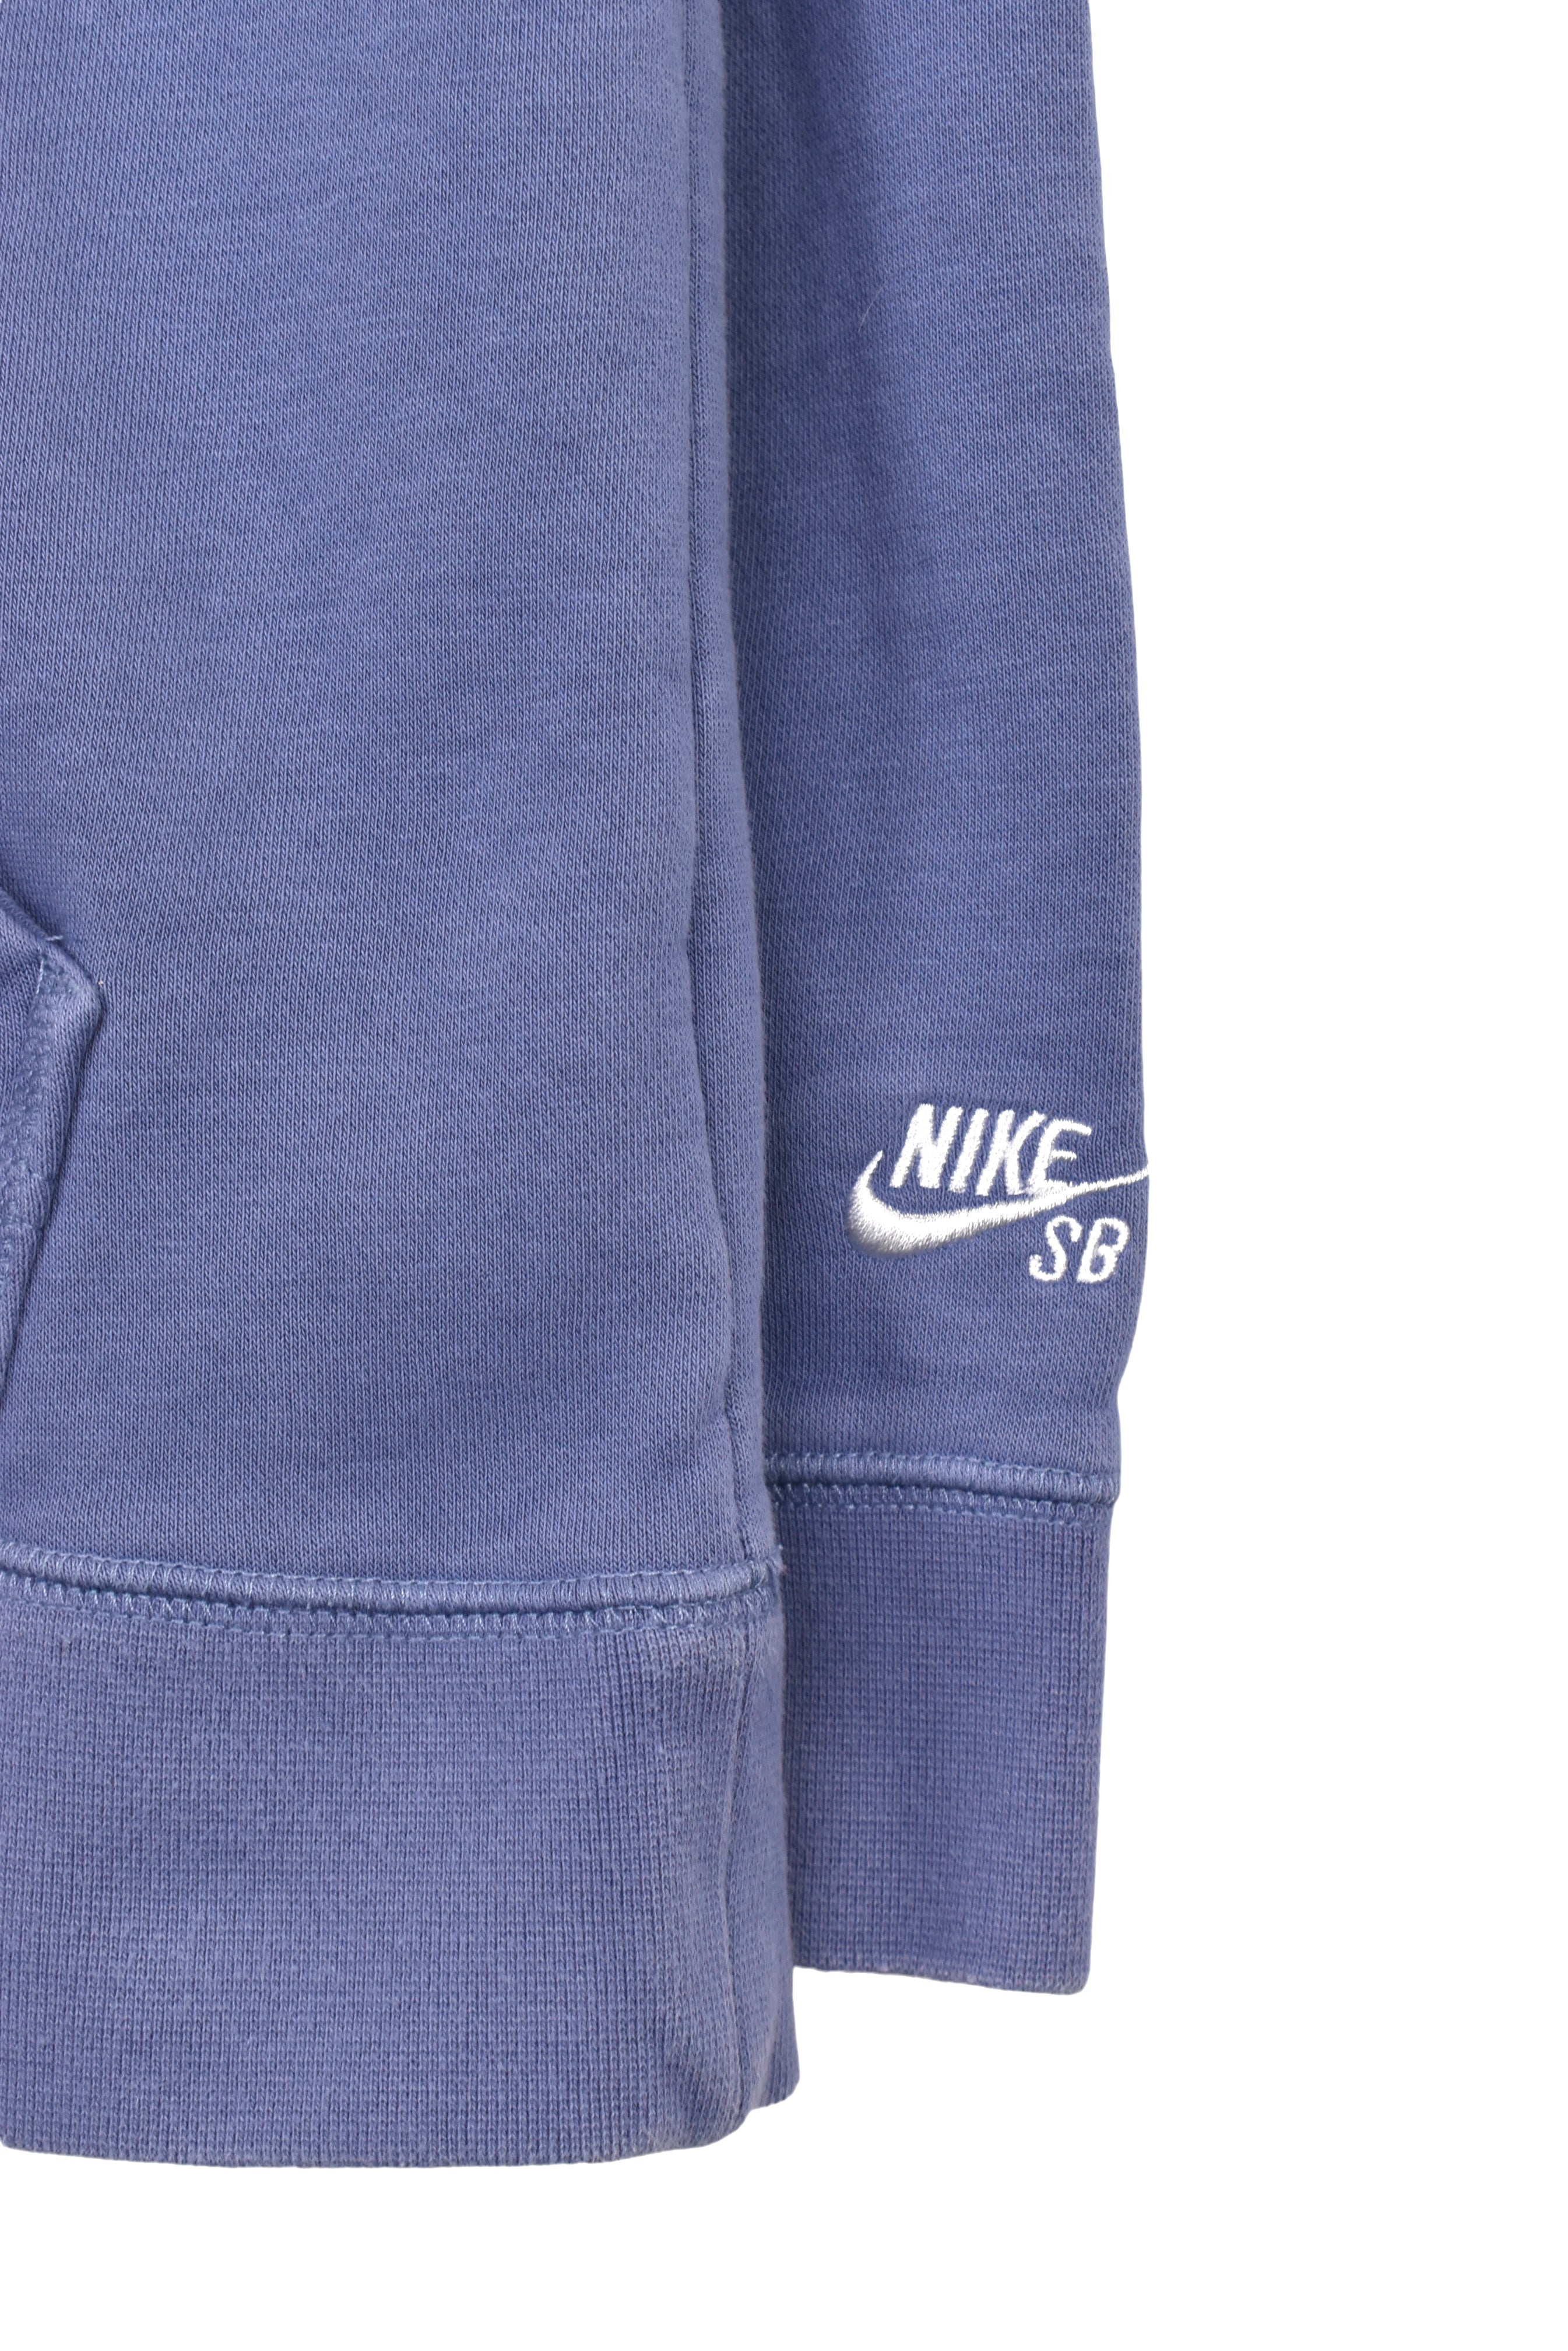 Vintage Nike hoodie (M), blue graphic sweatshirt